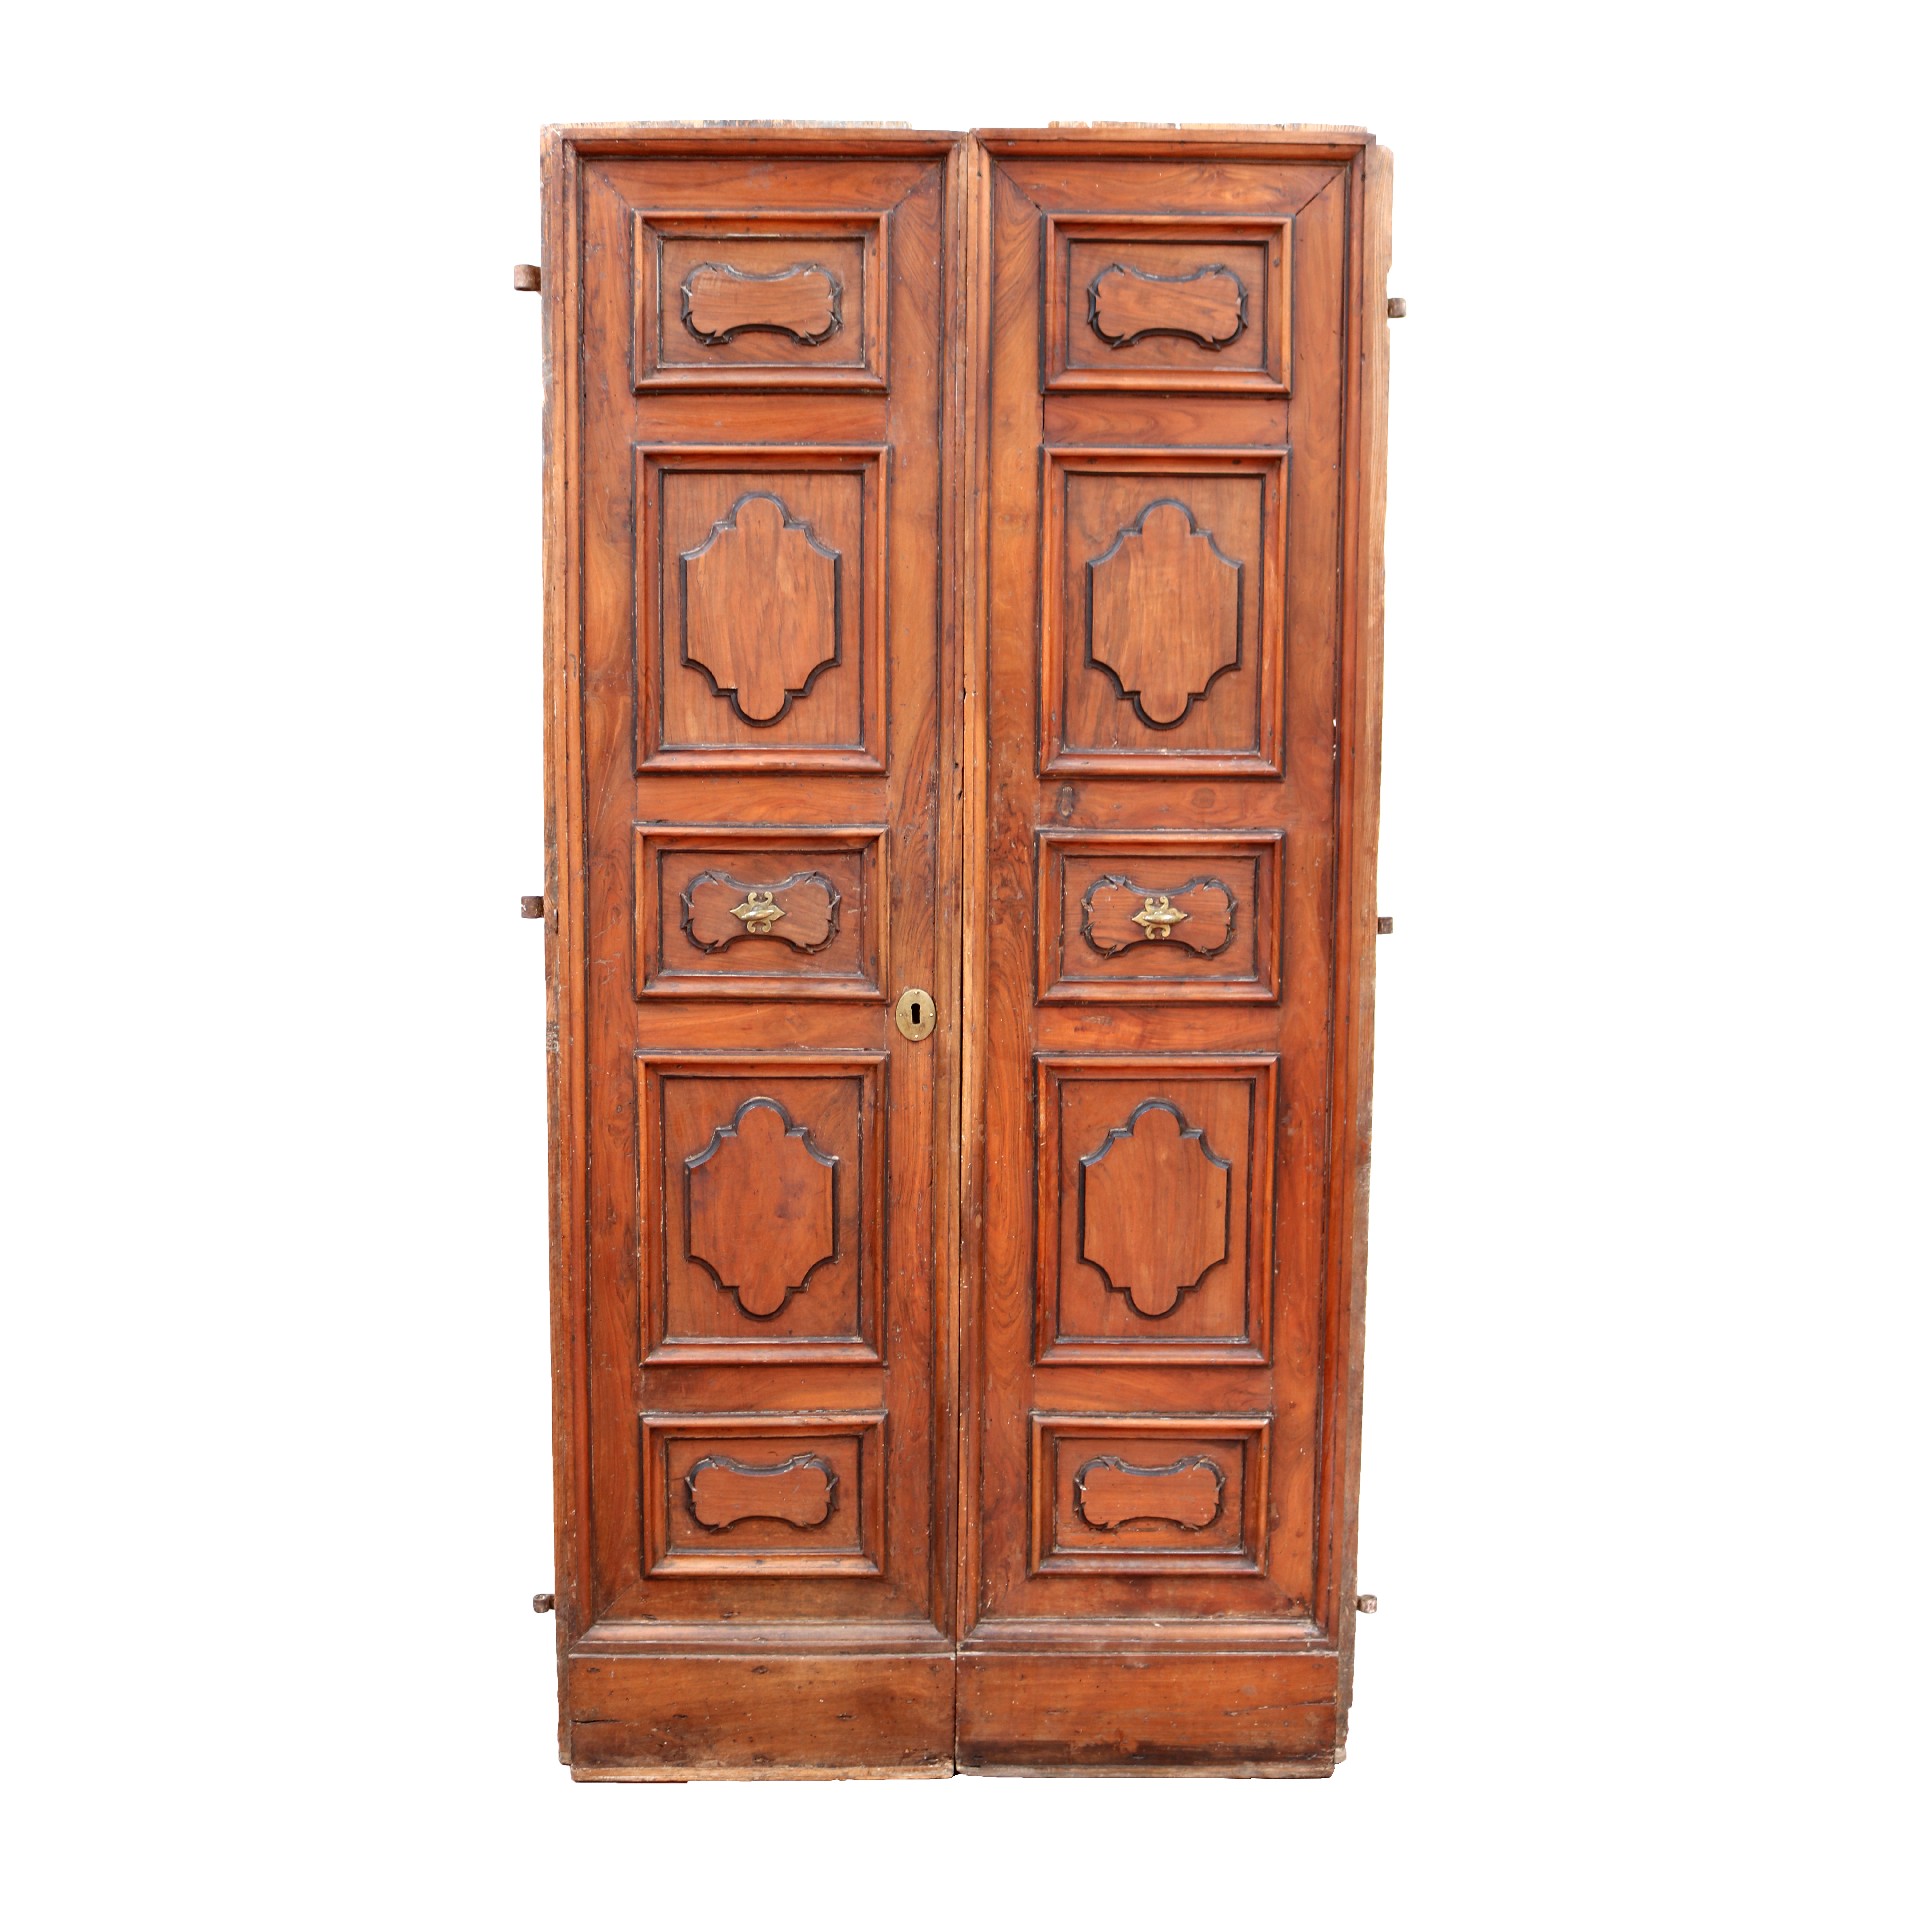 Antica porta in legno. - Porte Rare - Porte Antiche - Prodotti - Antichità Fiorillo